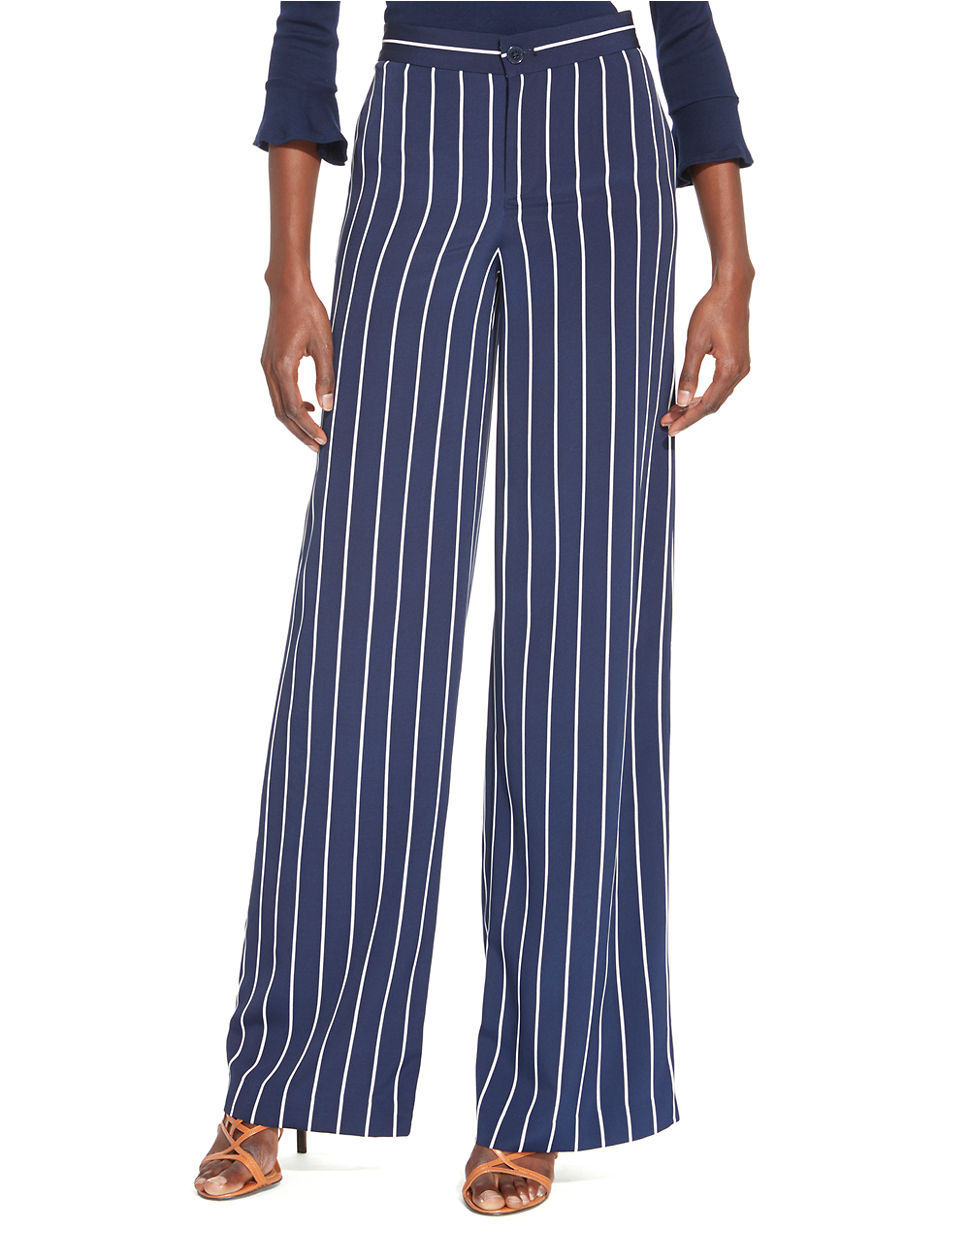 Lyst - Lauren By Ralph Lauren Petite Striped Wide Leg Pants in Blue